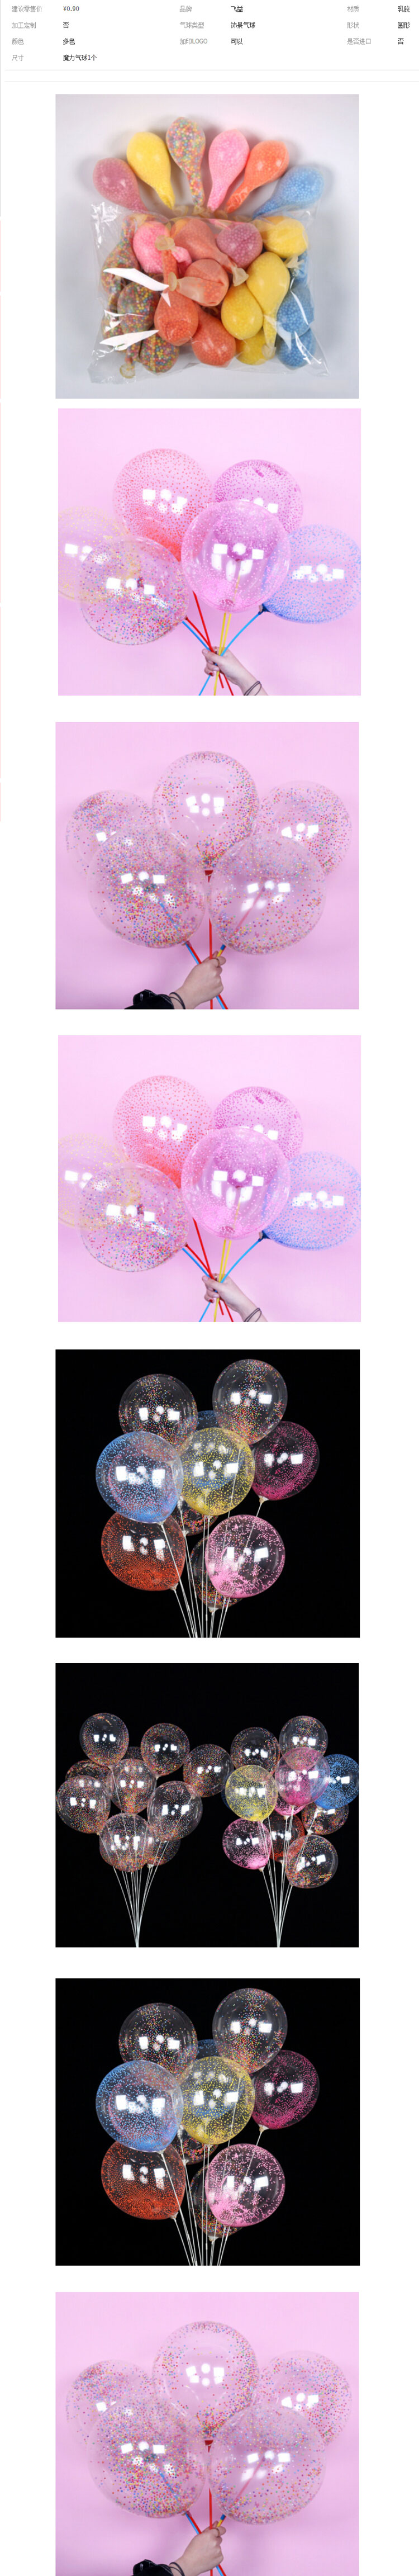 装饰气球_泡沫气球12寸魔力气球泡沫悬浮大号加厚圆形泡沫装饰---阿里巴巴